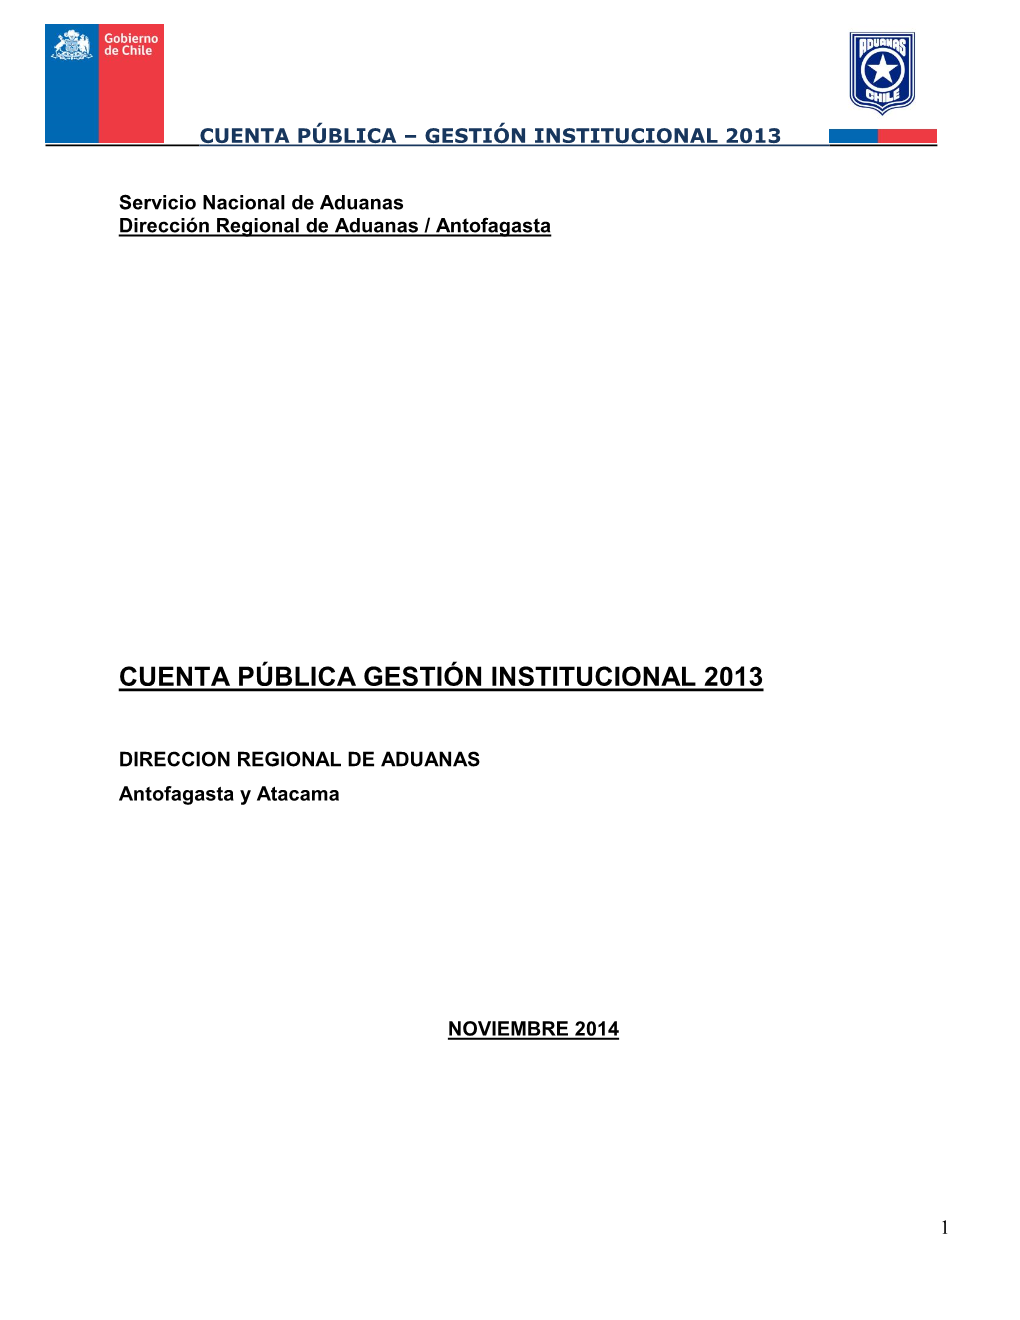 Cuenta Pública Gestión Institucional 2013